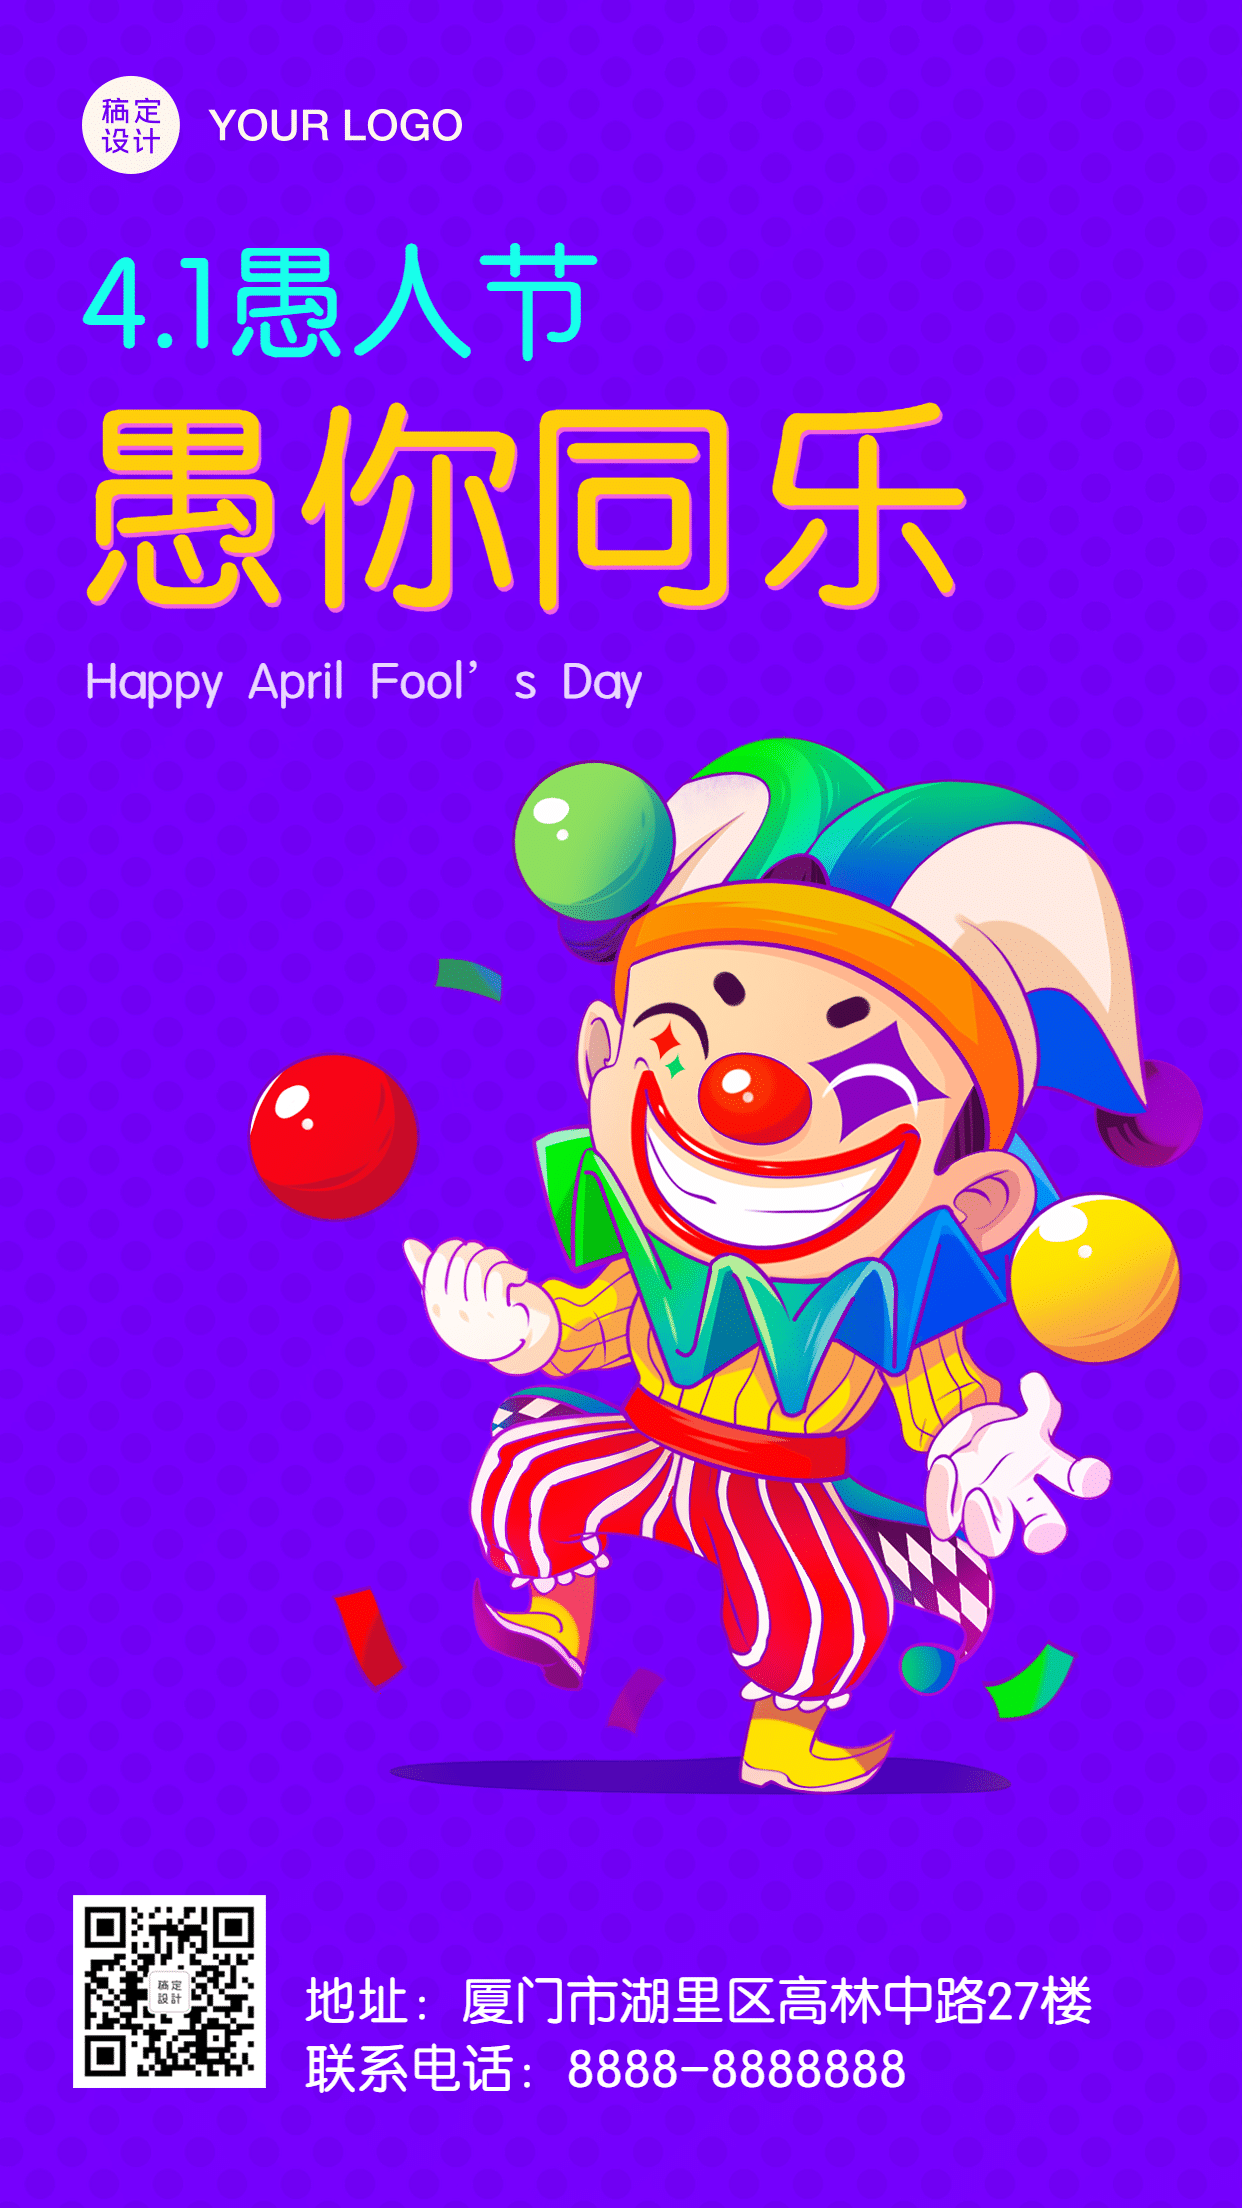 愚人节祝福小丑可爱插画手机海报